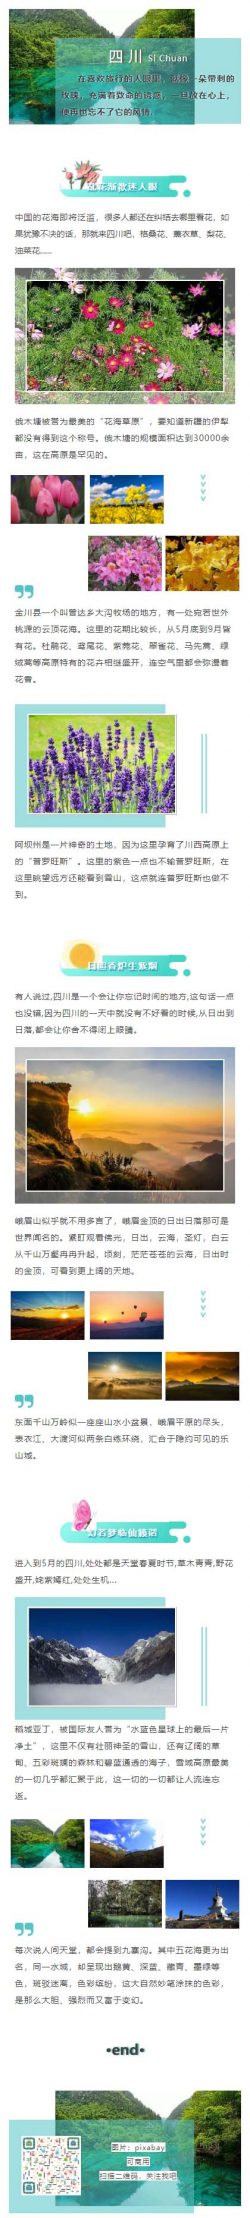 旅行四川景点景区微信推文模板风景介绍旅游推送素材